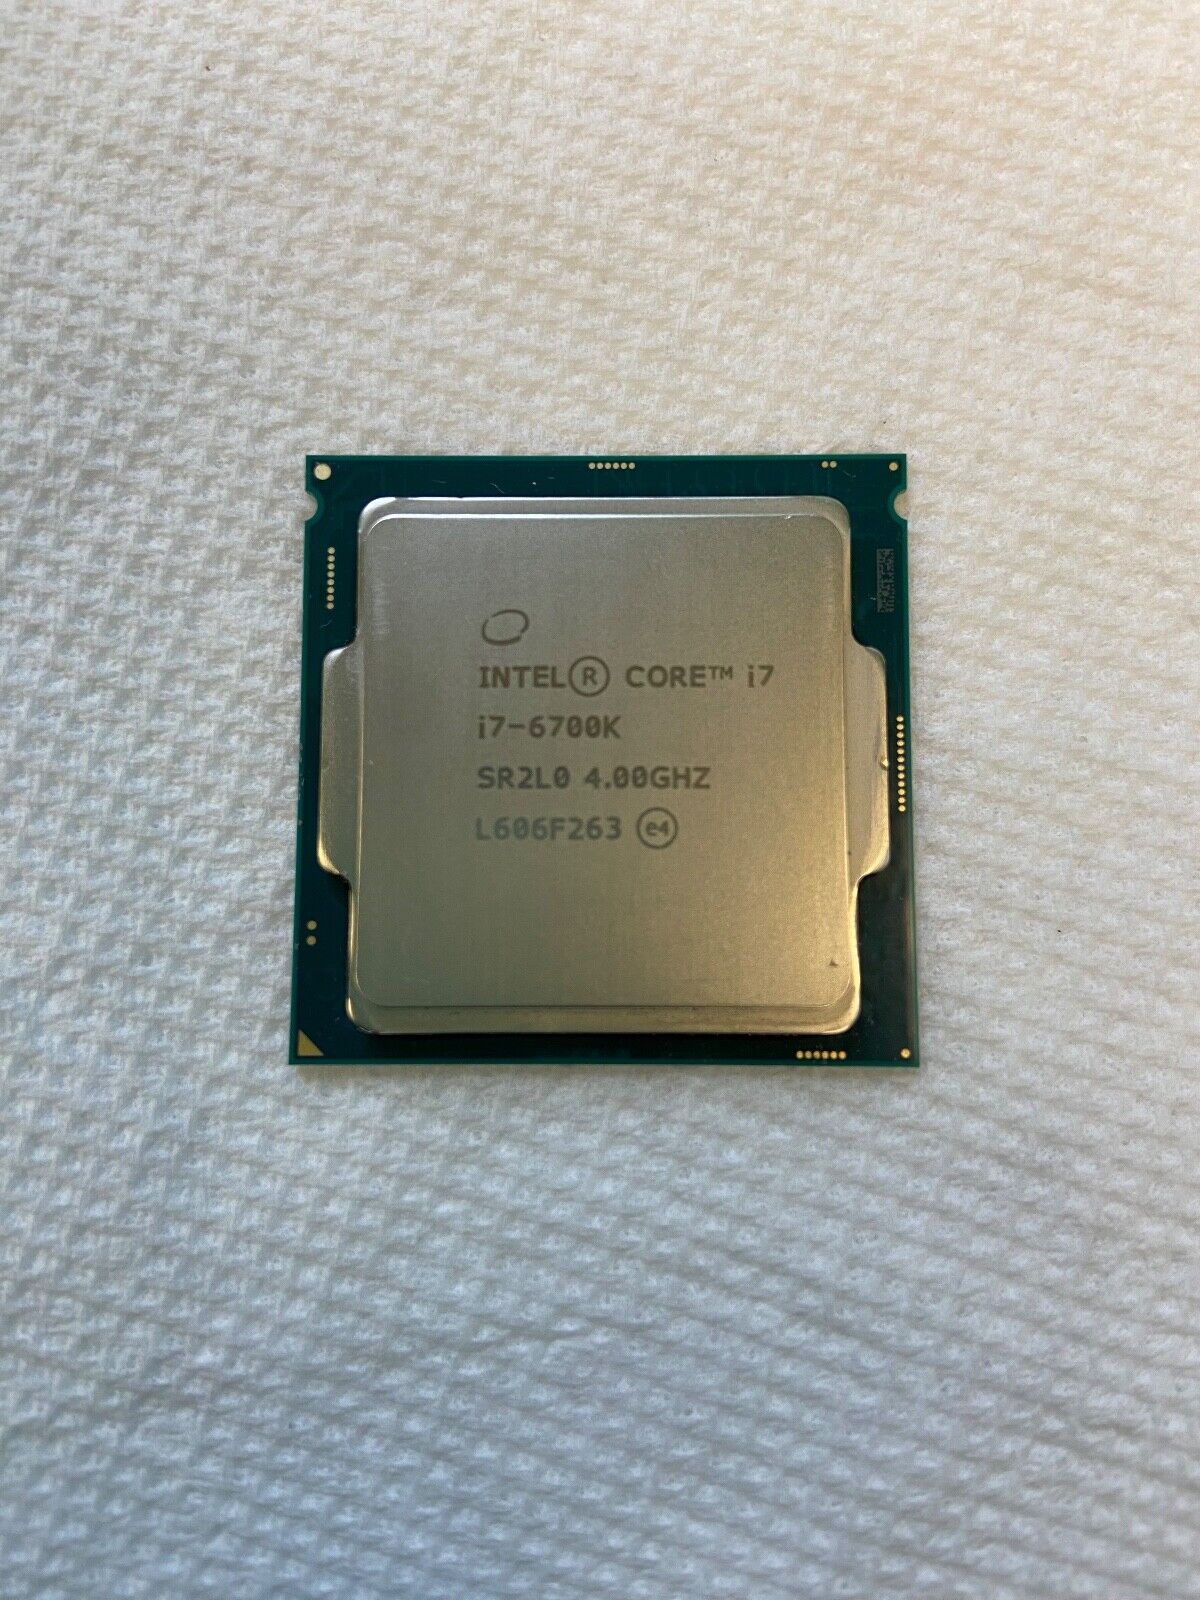 Intel Core i7-6700K 4.00 GHz LGA 1151 Quad-Core Processor